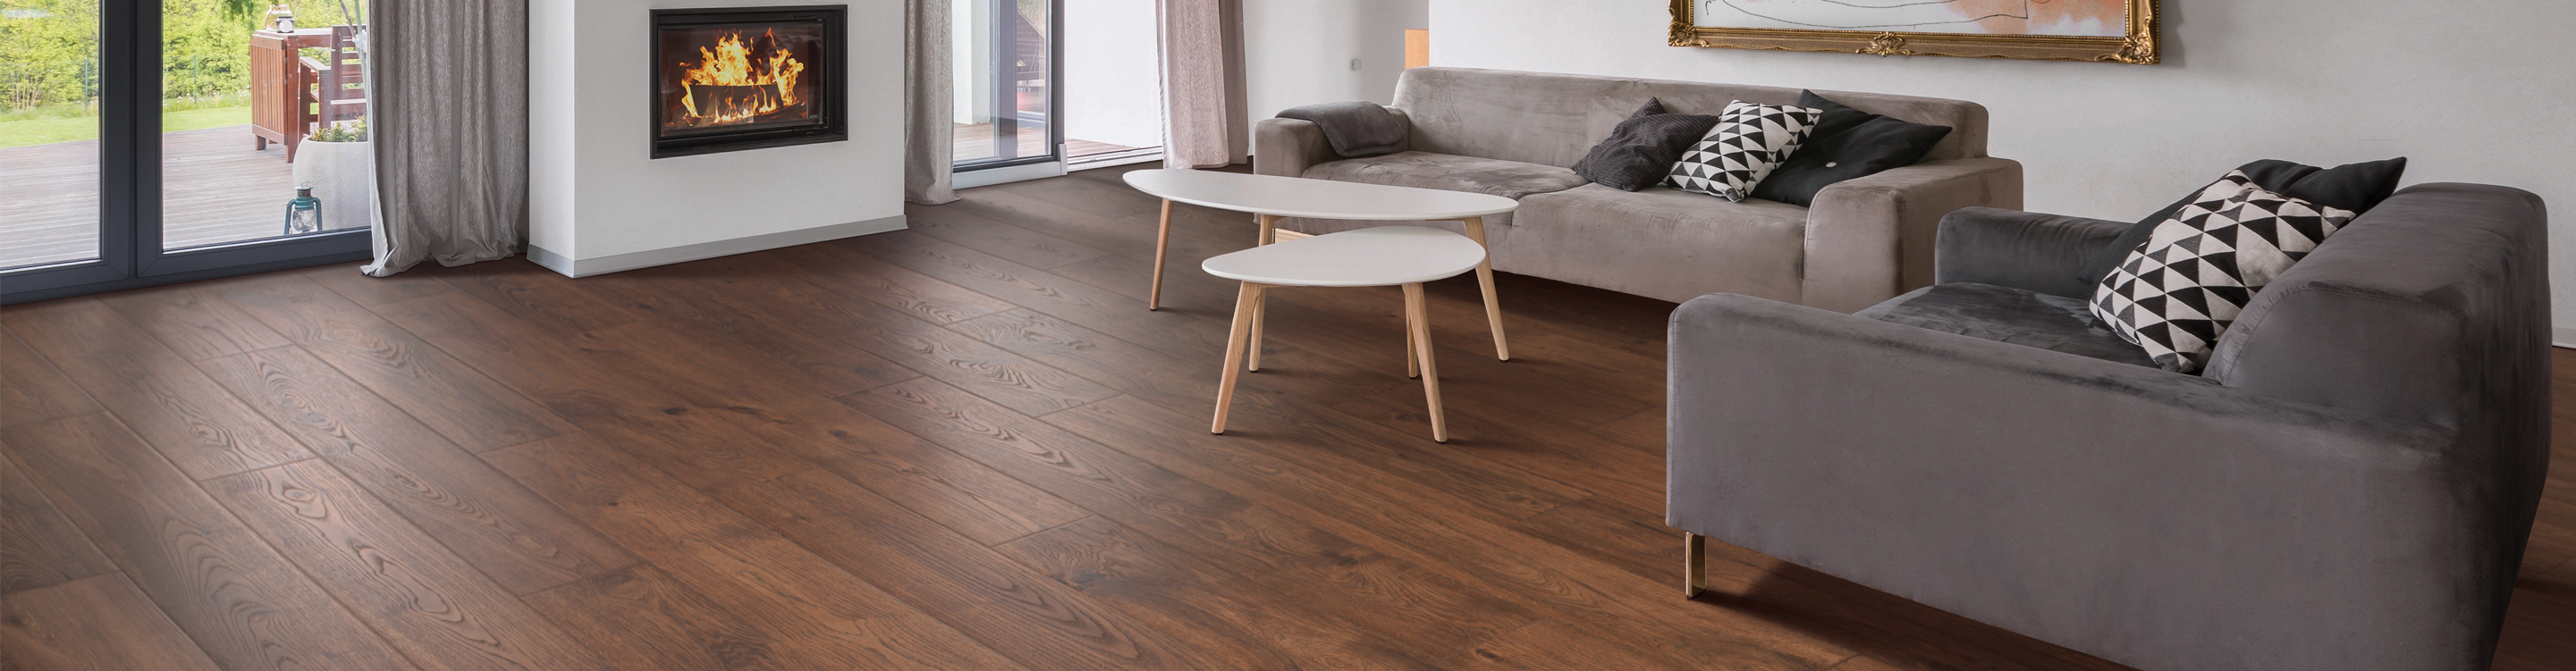 wood-look laminate floors in a living room